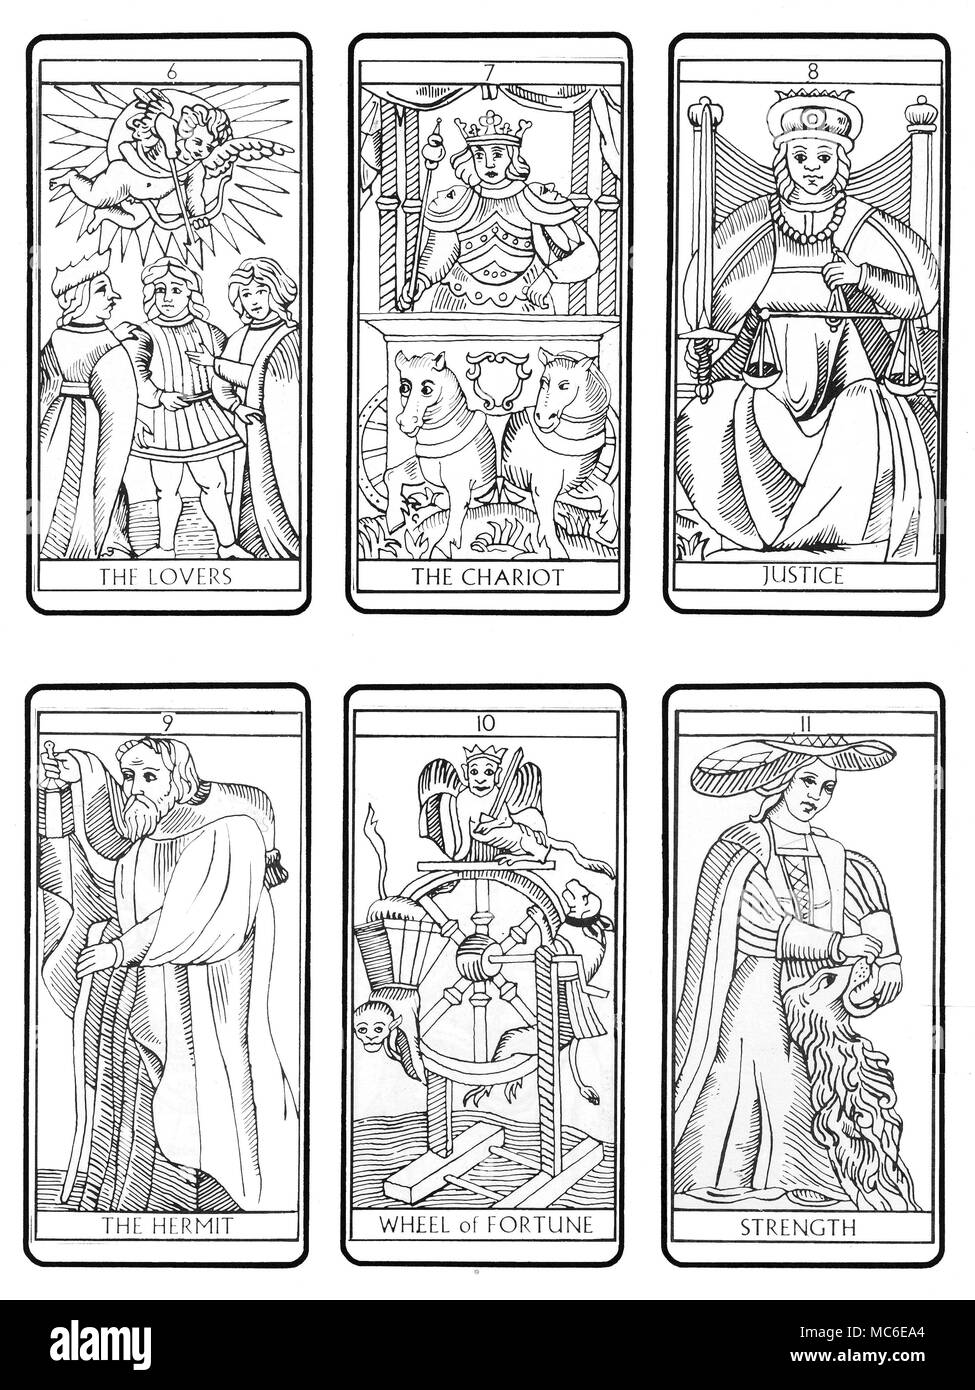 TAROT KARTEN - MARSEILLE DECK Die zweiten sechs der Sequenz von 22 Tarot Karten (entsprechend der traditionellen Marseille Design), die von der sechsten Karte (Der Liebhaber), durch den der Wagen, die Justiz, der Eremit, das Glücksrad und Stärke. Die verbleibenden Sequenzen sind verfügbar, in den Reihen des 6. Stockfoto